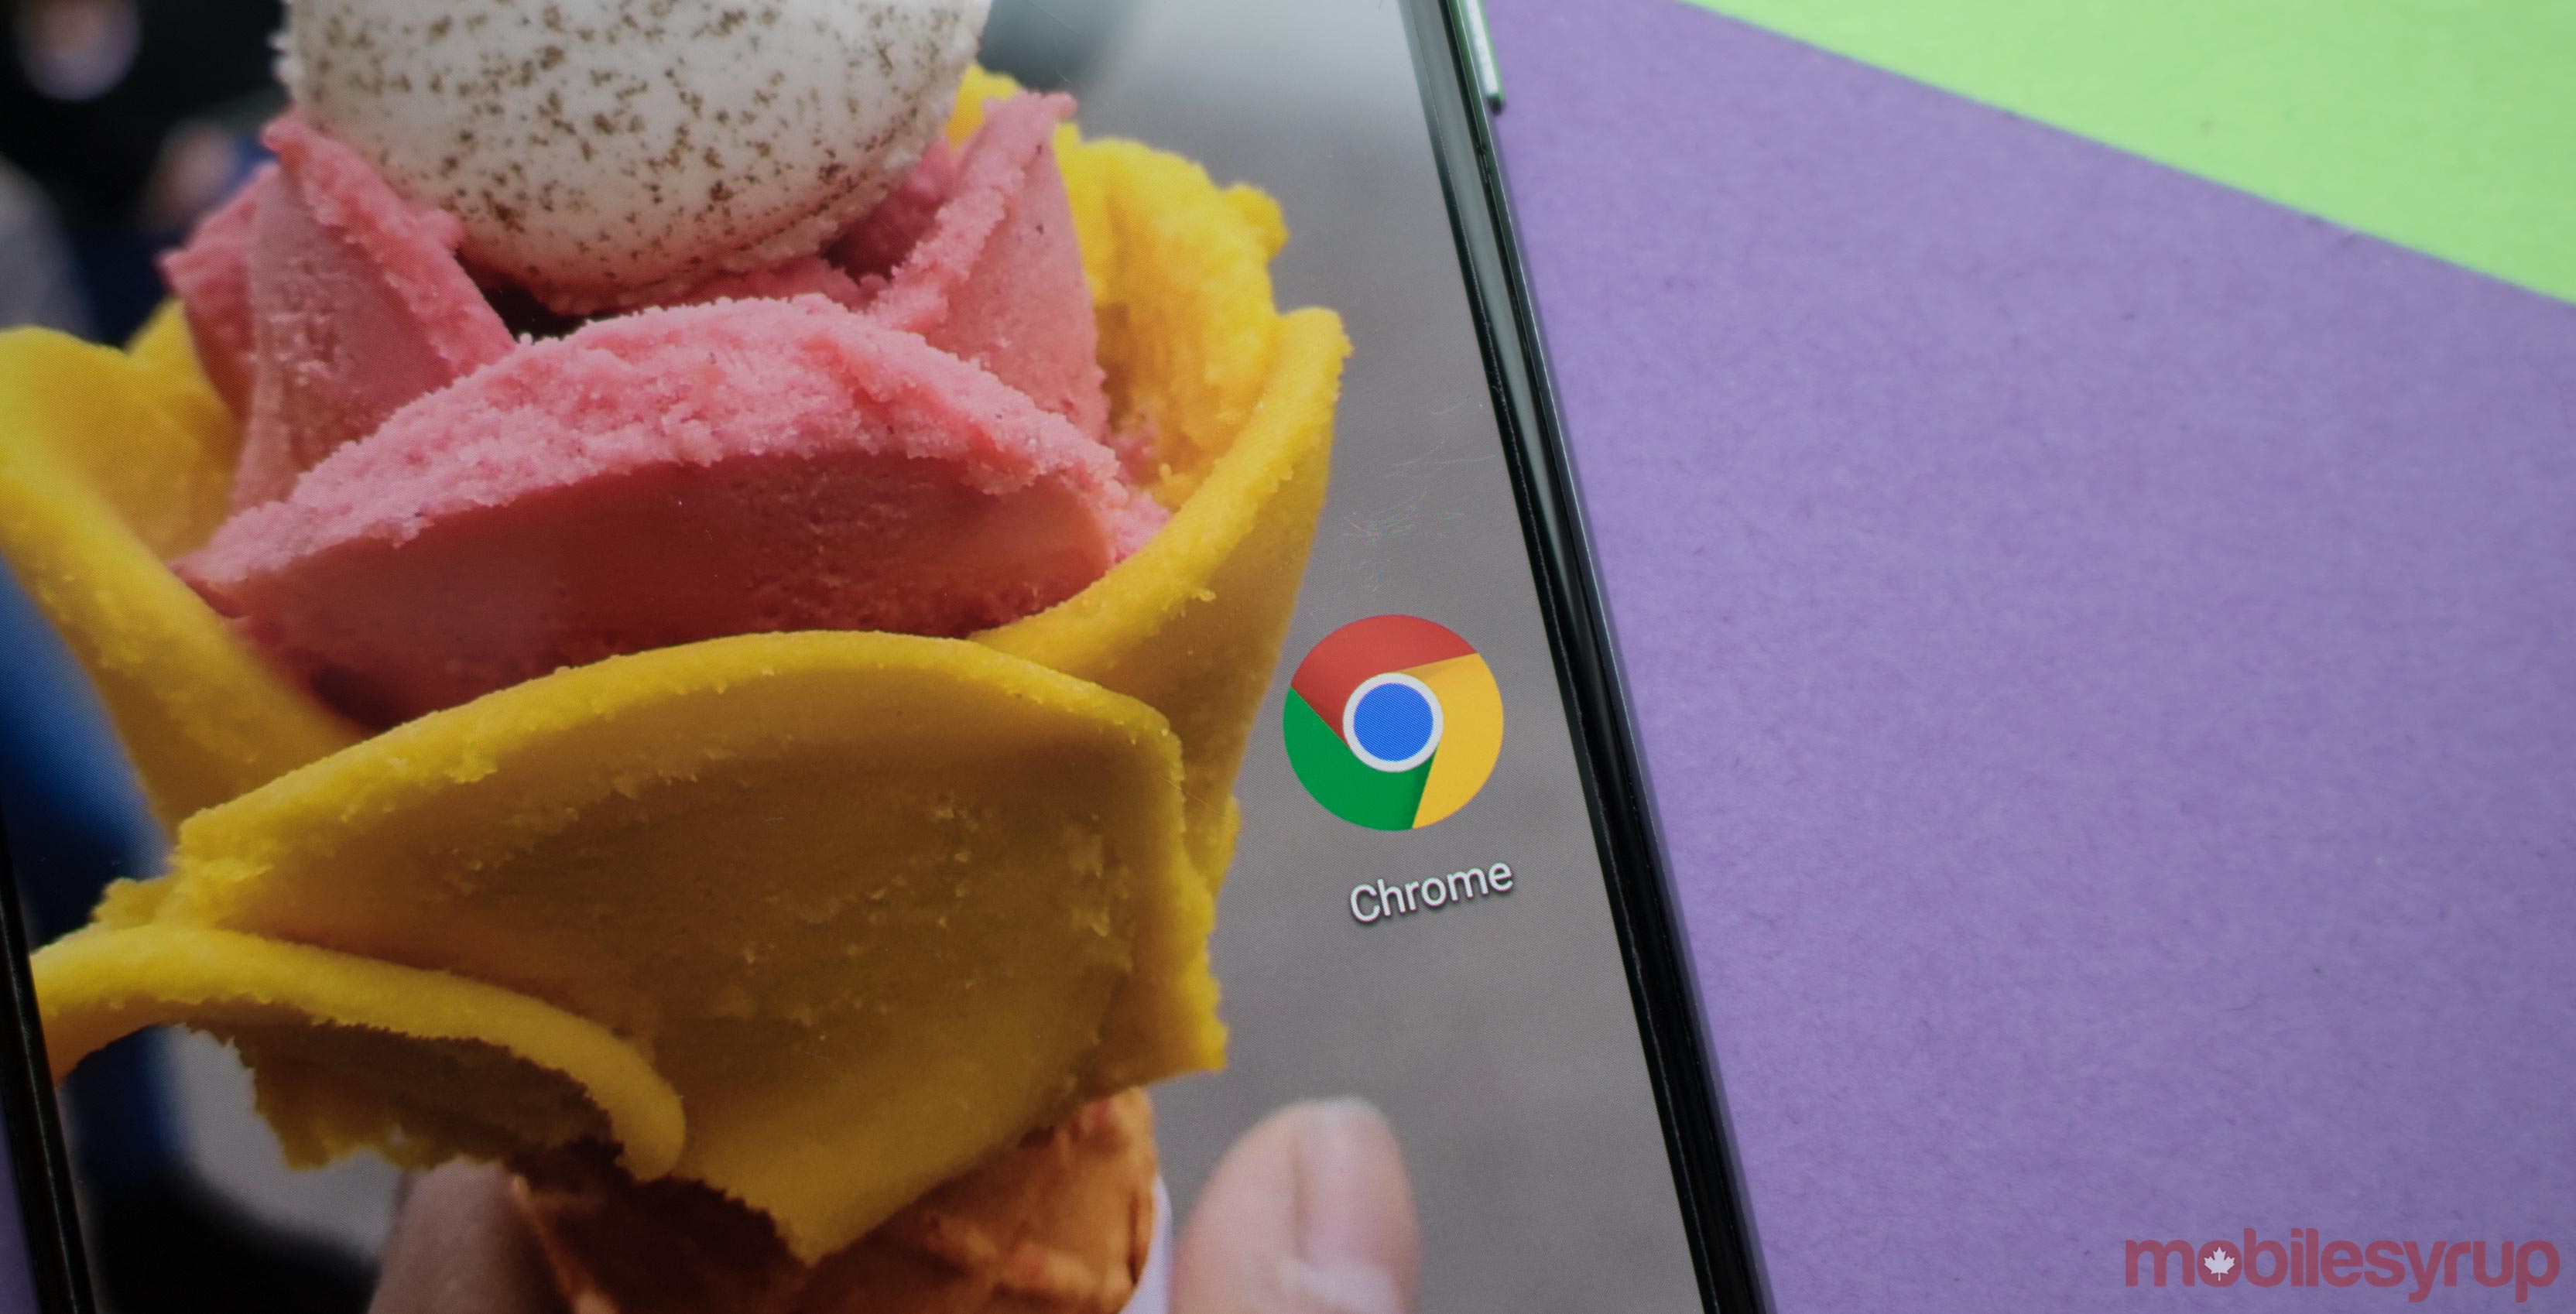 Google Chrome with a gelato